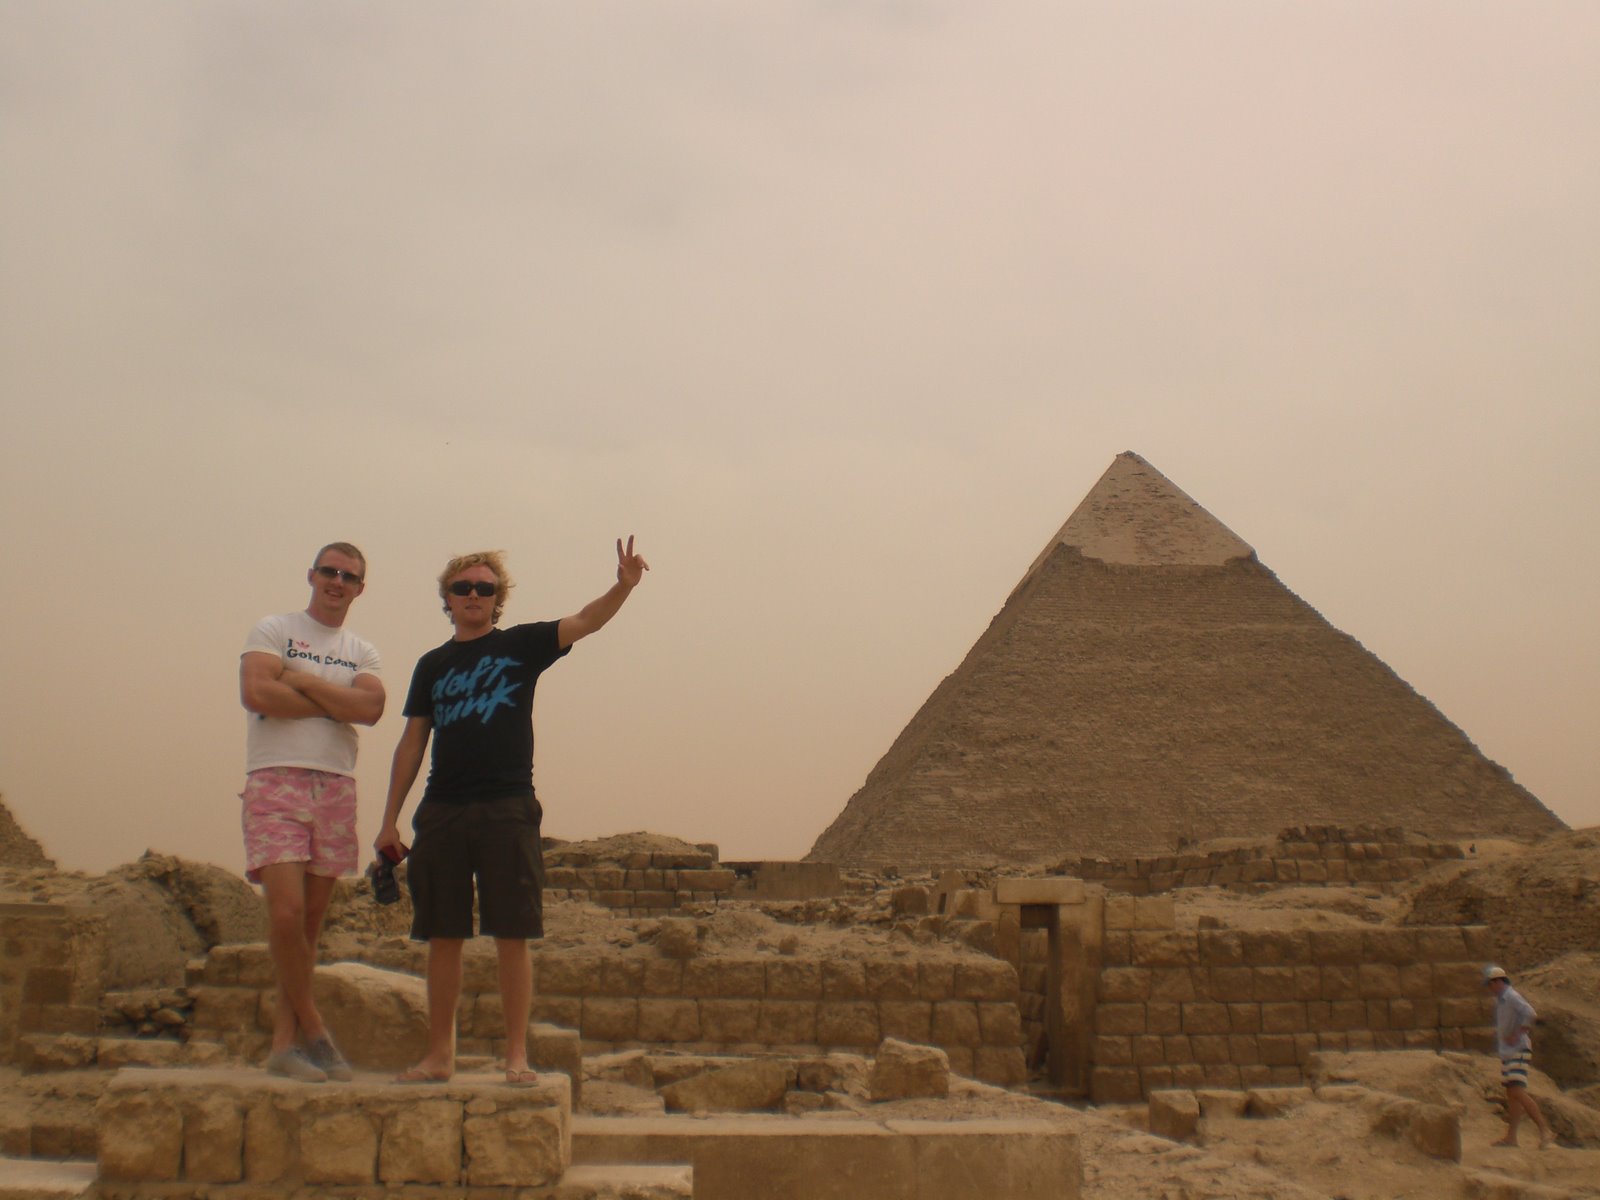 [Dave+and+Fintan+at+Pyramids.jpg]